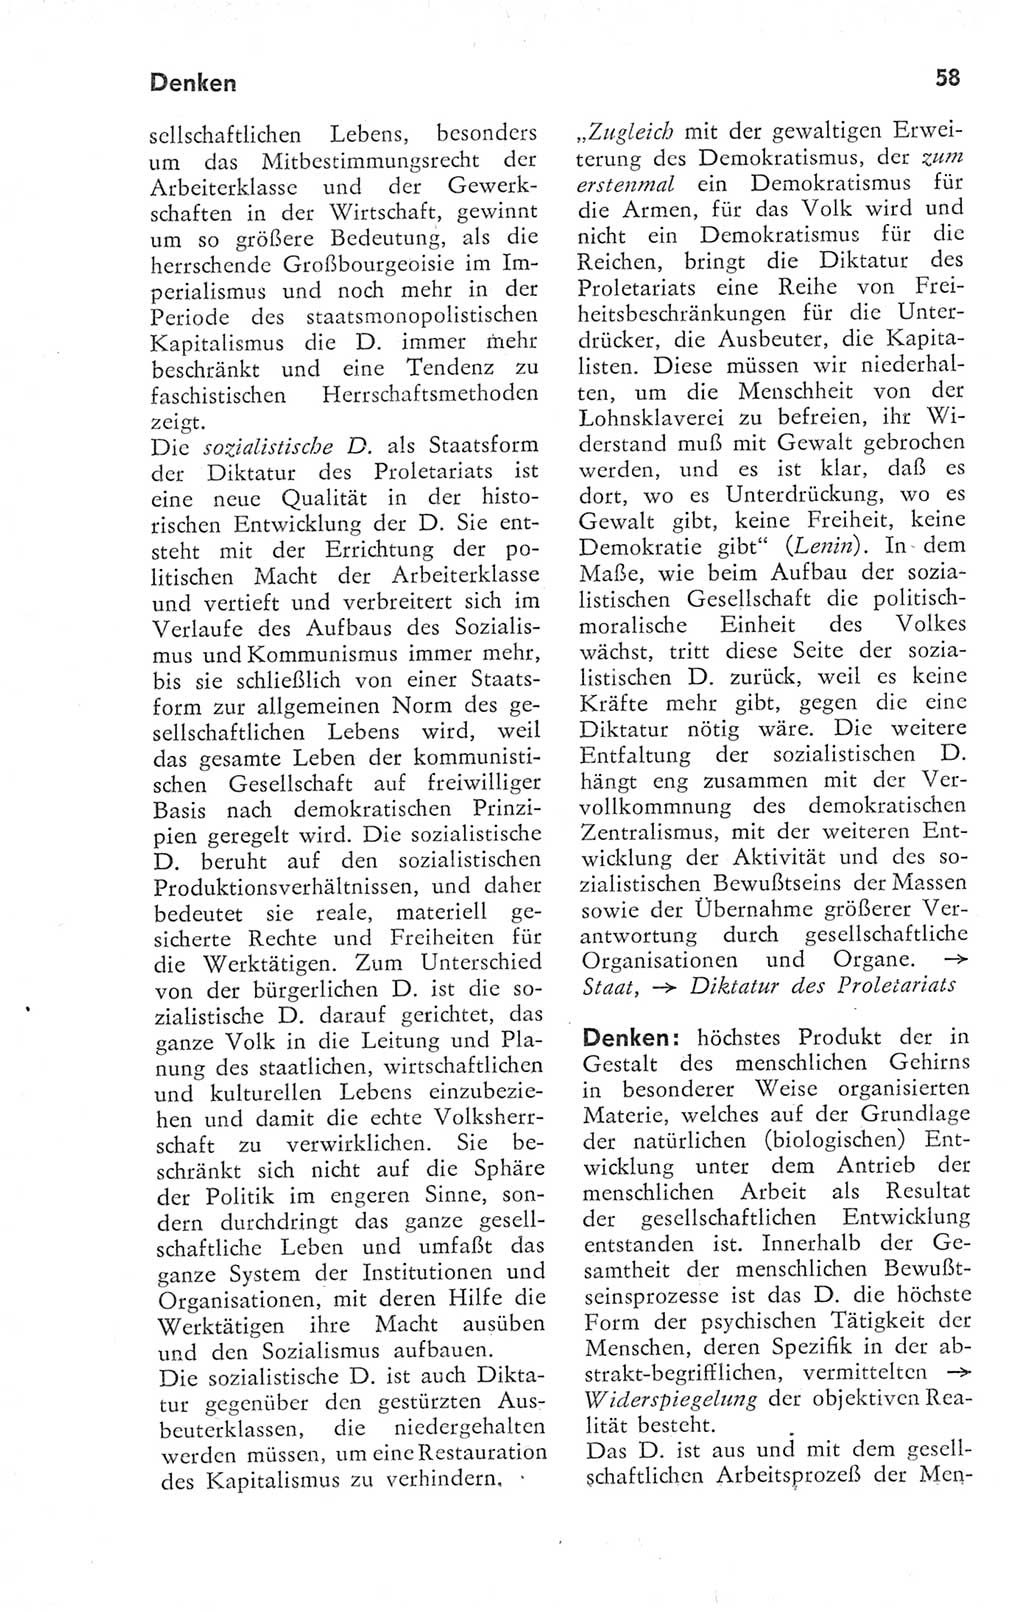 Kleines Wörterbuch der marxistisch-leninistischen Philosophie [Deutsche Demokratische Republik (DDR)] 1974, Seite 58 (Kl. Wb. ML Phil. DDR 1974, S. 58)